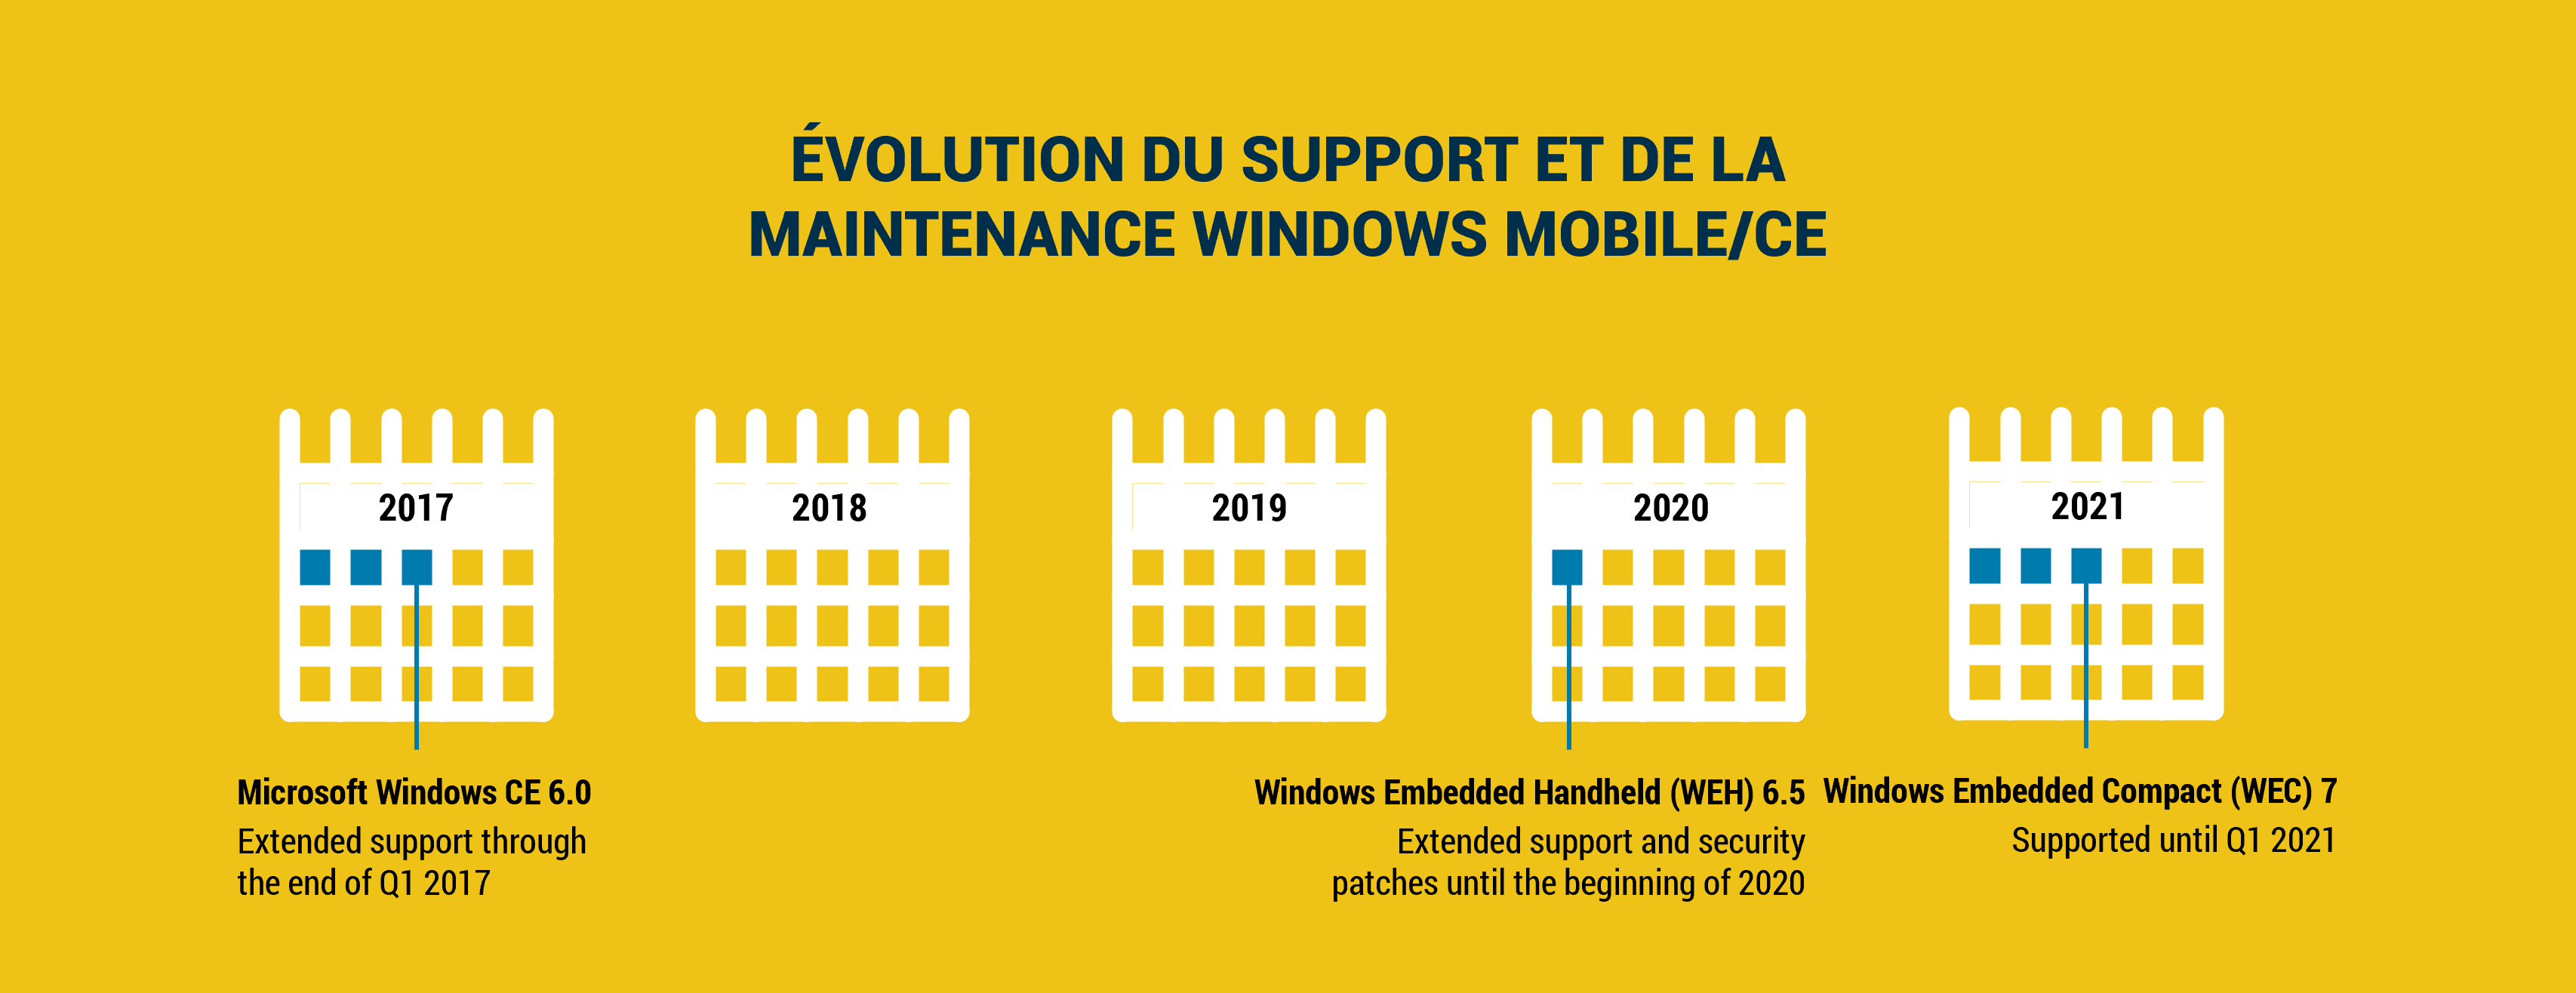 Tableau d'évolution du support windows